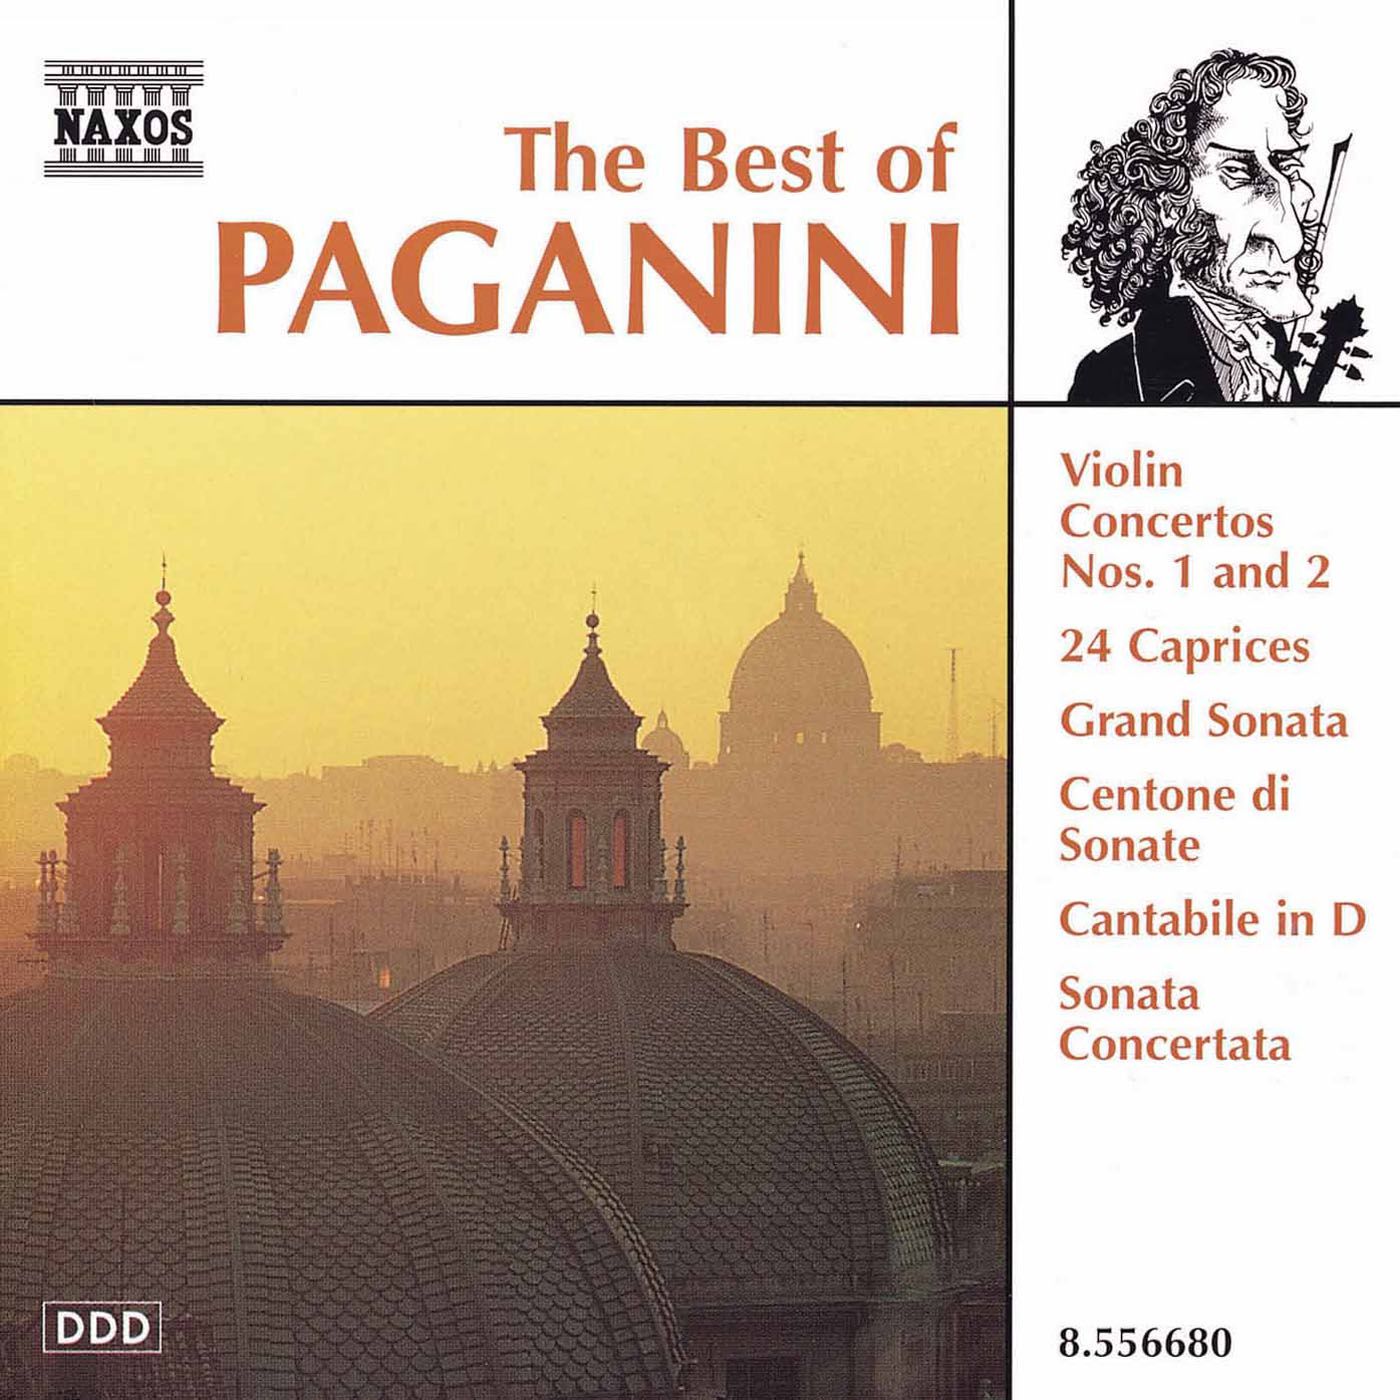 Violin concerto no 2. The best of Paganini. Паганини Соната 2. Paganini Violin Concerto no 2. Niccolo Paganini Violin Concerto Ноты.